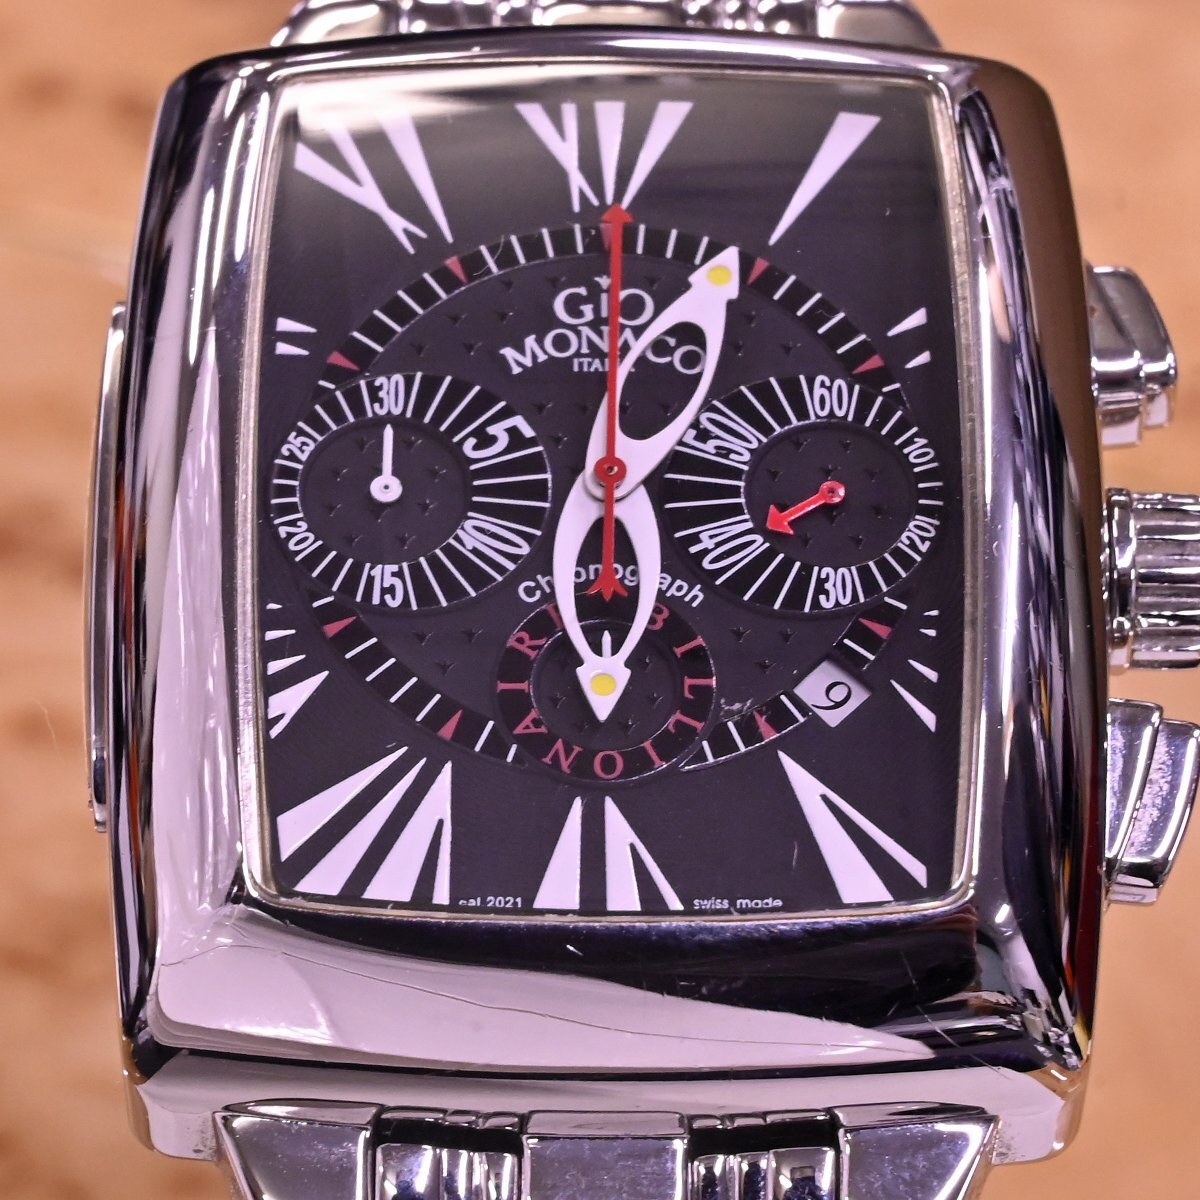 本物 超美品 ジオモナコ 極希少 オートマチック クロノグラフ ビリオネア メンズウォッチ 男性用自動巻腕時計 純正SSブレス GIO MONACOの画像6